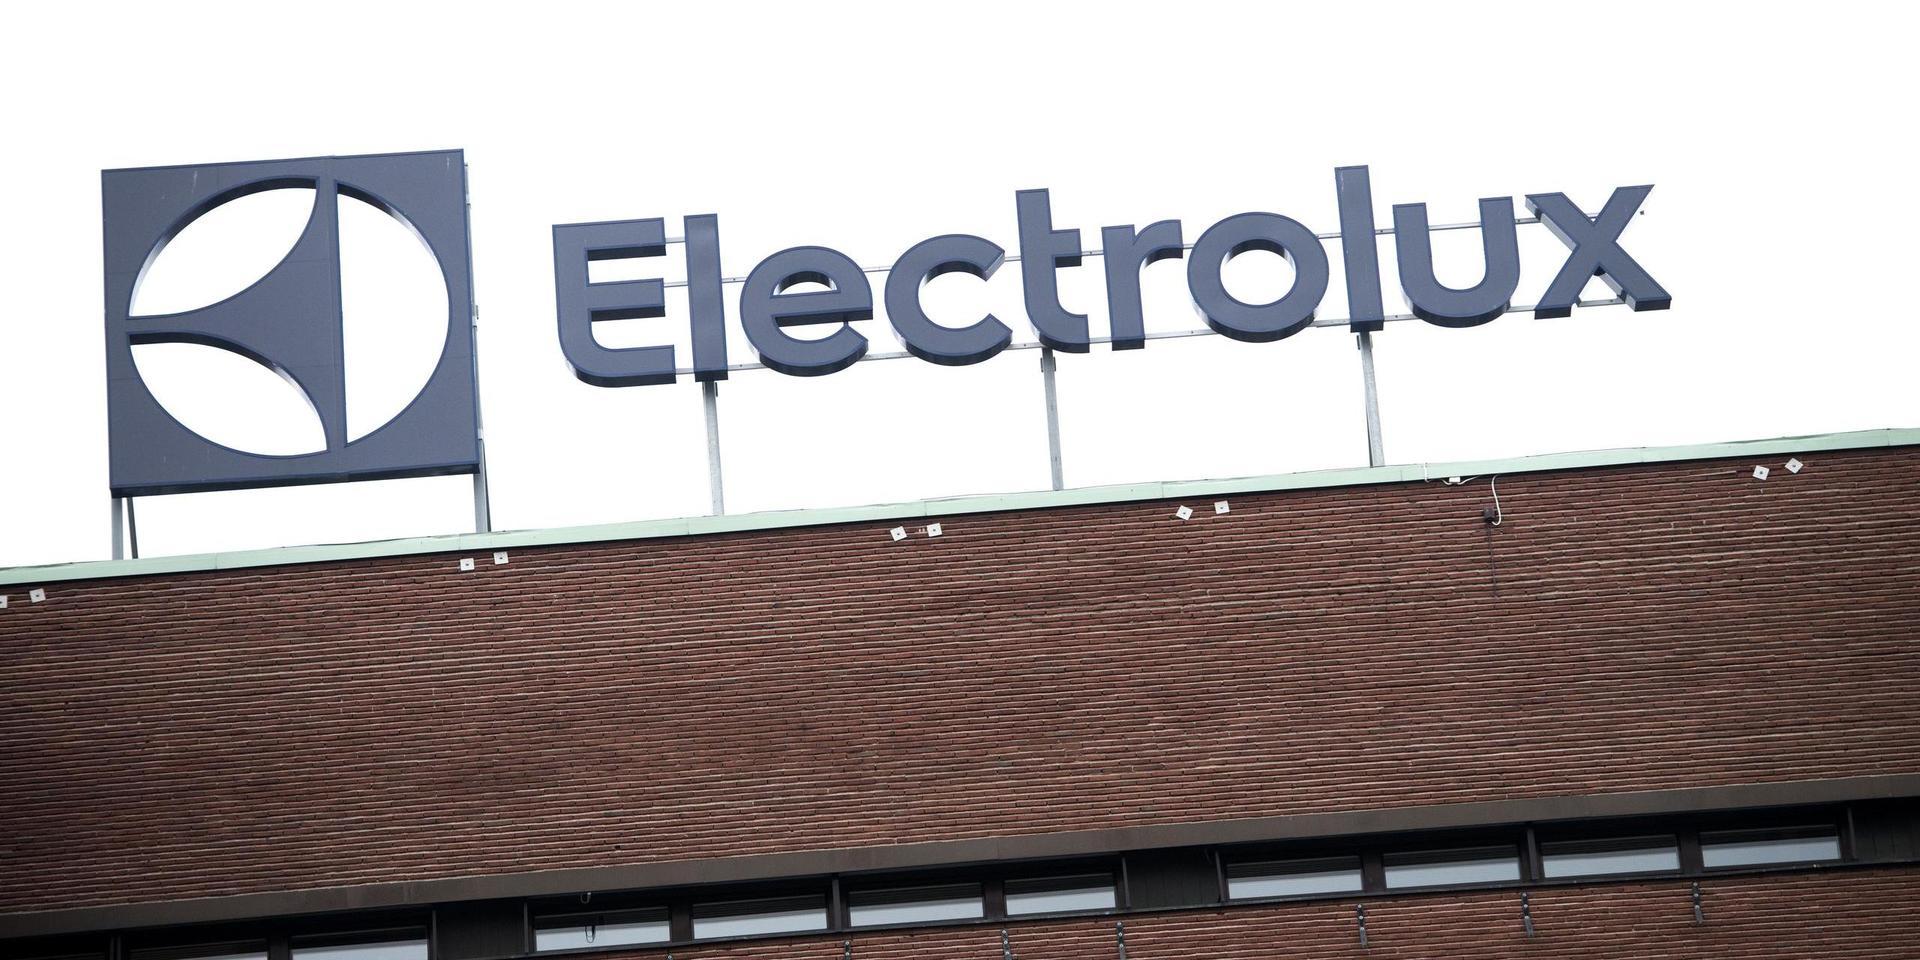 Electrolux klår sina egna förväntningar för det andra kvartalet, meddelar företaget.